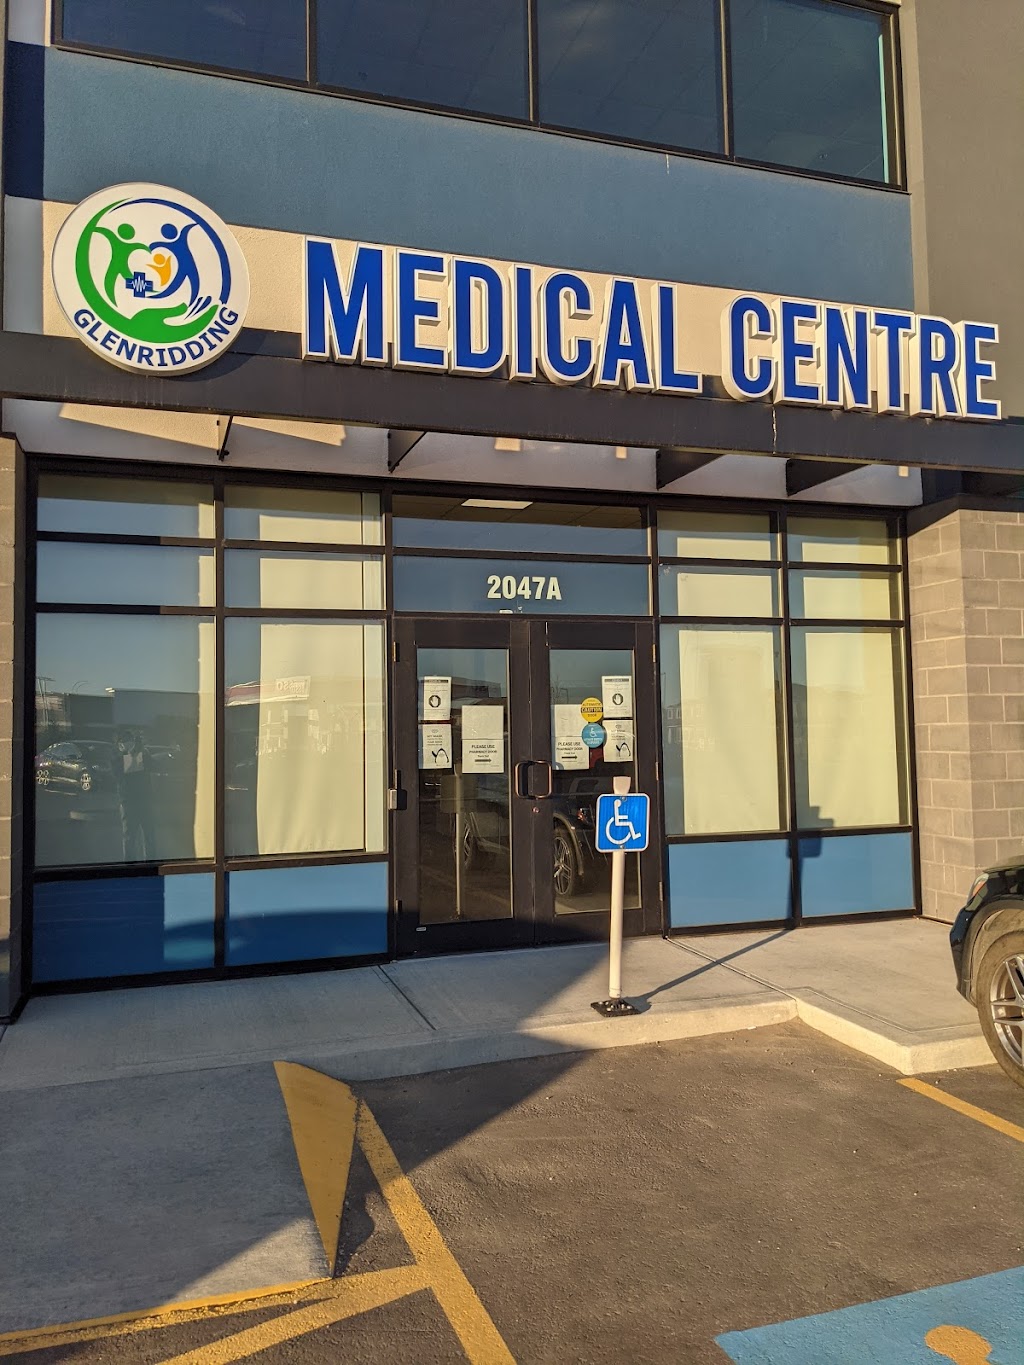 Glenridding Medical Centre | health | 2047A 163 St SW, Edmonton, AB T6W 4V5, Canada | 7808502345 OR +1 780-850-2345